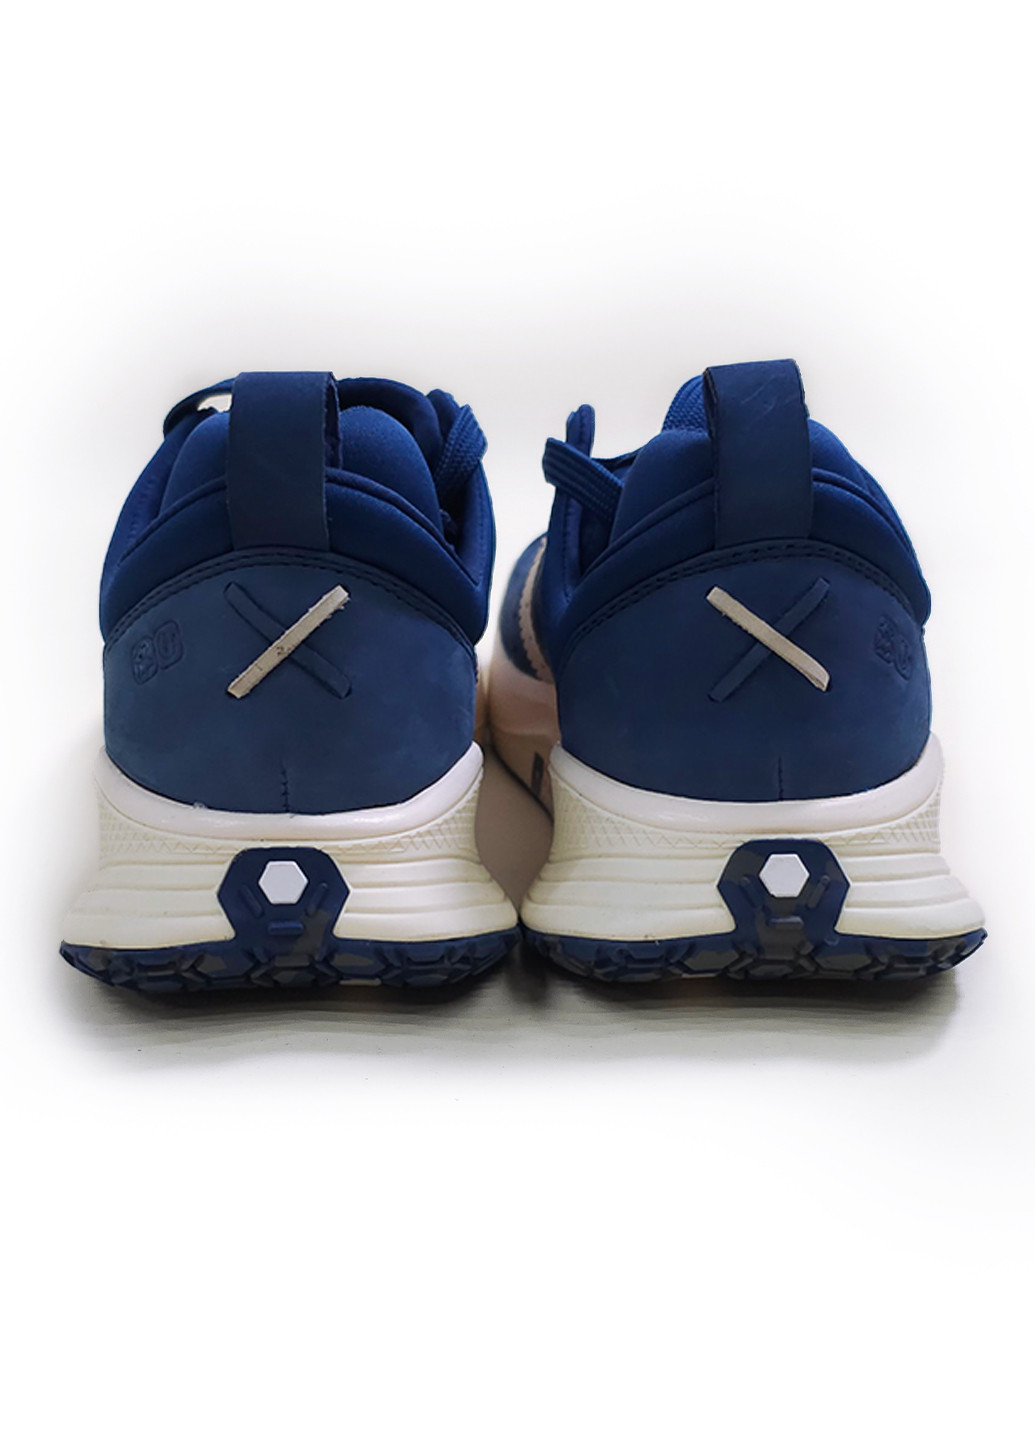 Синій кросівки чоловічі Deckers X Lab X-SCAPE NBK Low